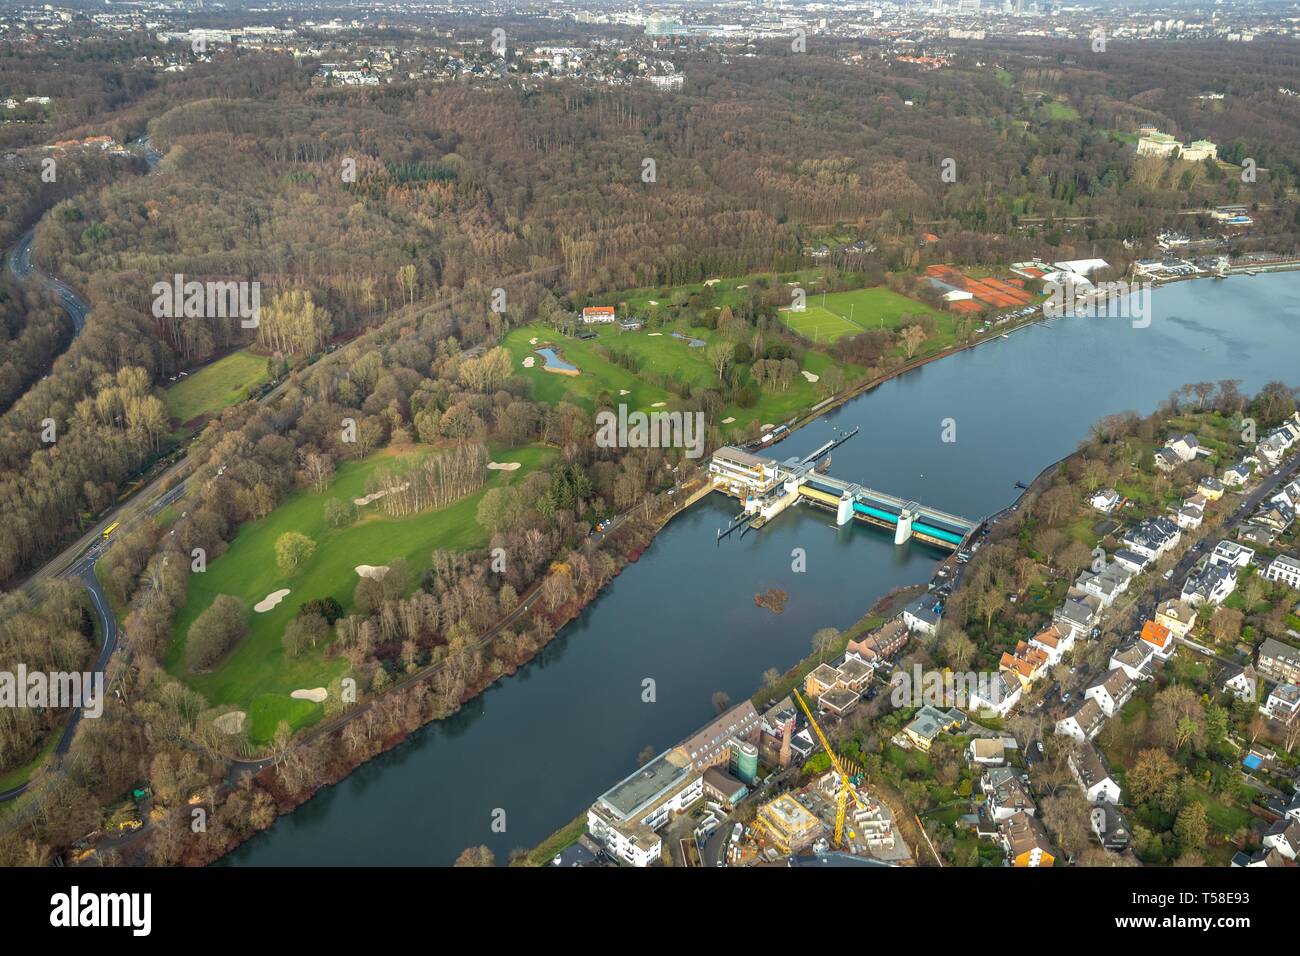 Vue aérienne, le lac Baldeney, golf, parcours de golf de l'ETUF, centre-ville Hugel, vallée de la Ruhr avec mur de barrage, barrage, Werden, Essen, Ruhr, Nord Banque D'Images